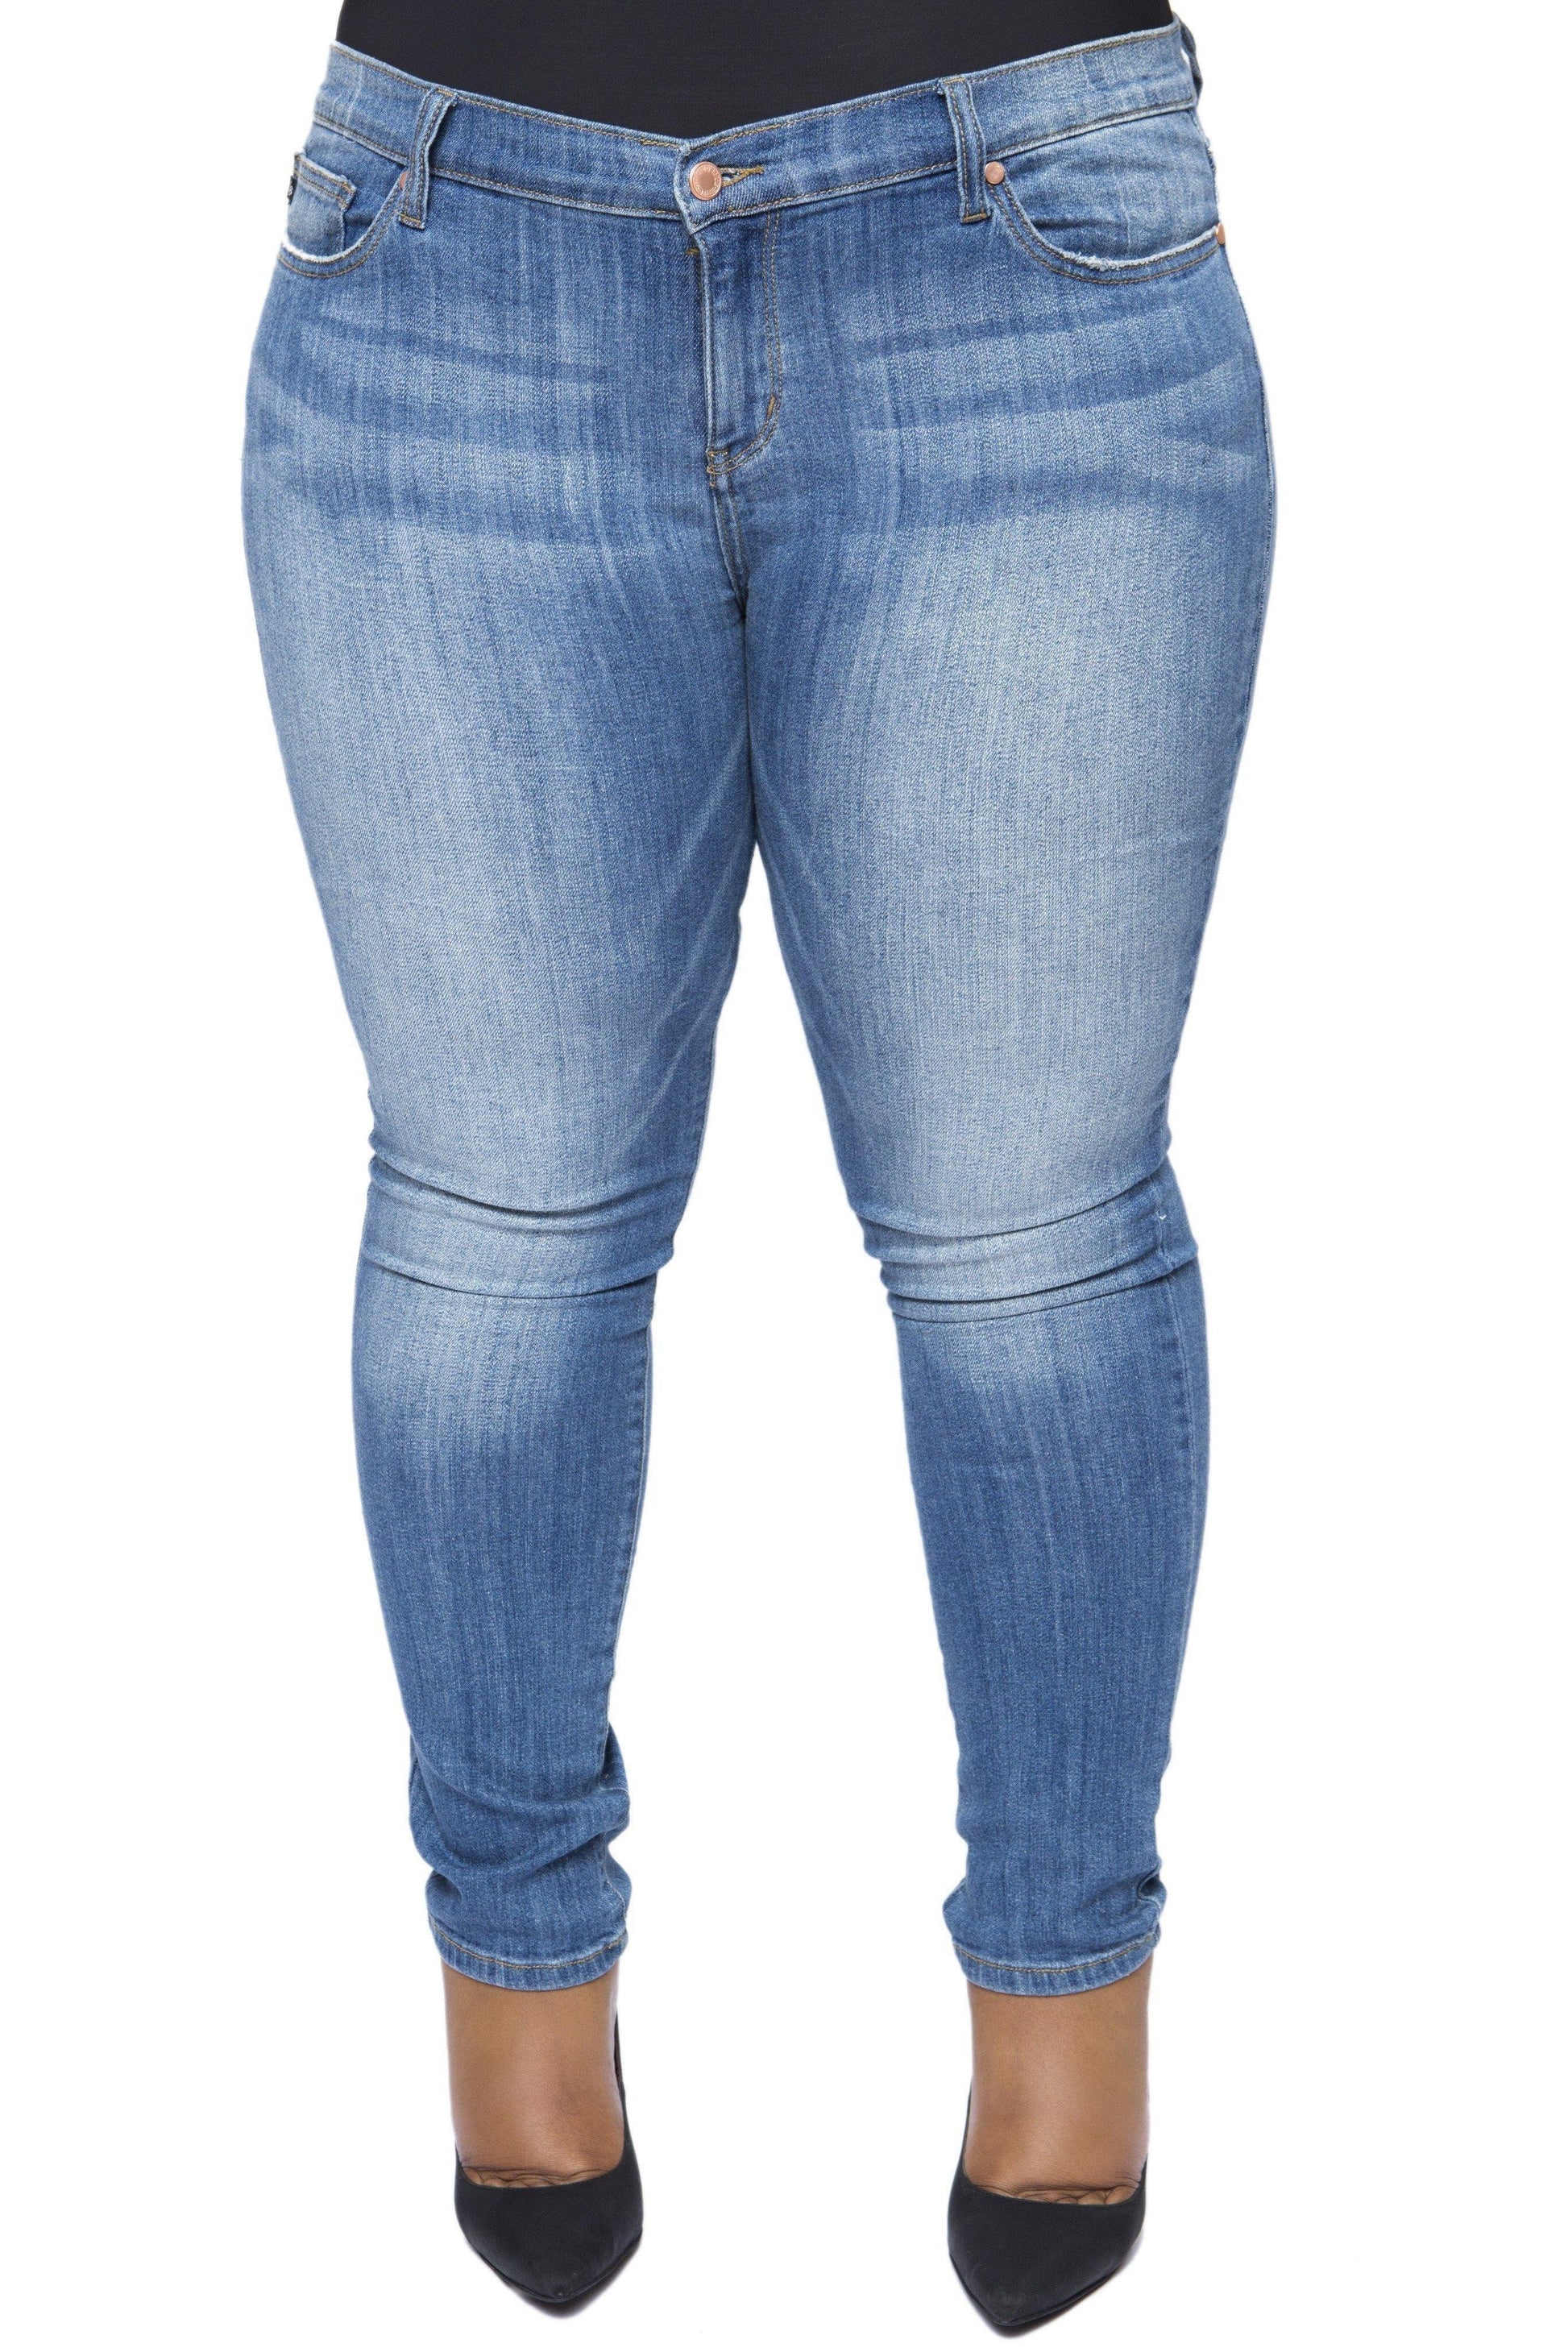 Plus Size Jeans (Medium Blue) 1x 2x 3x – Boughie Curves